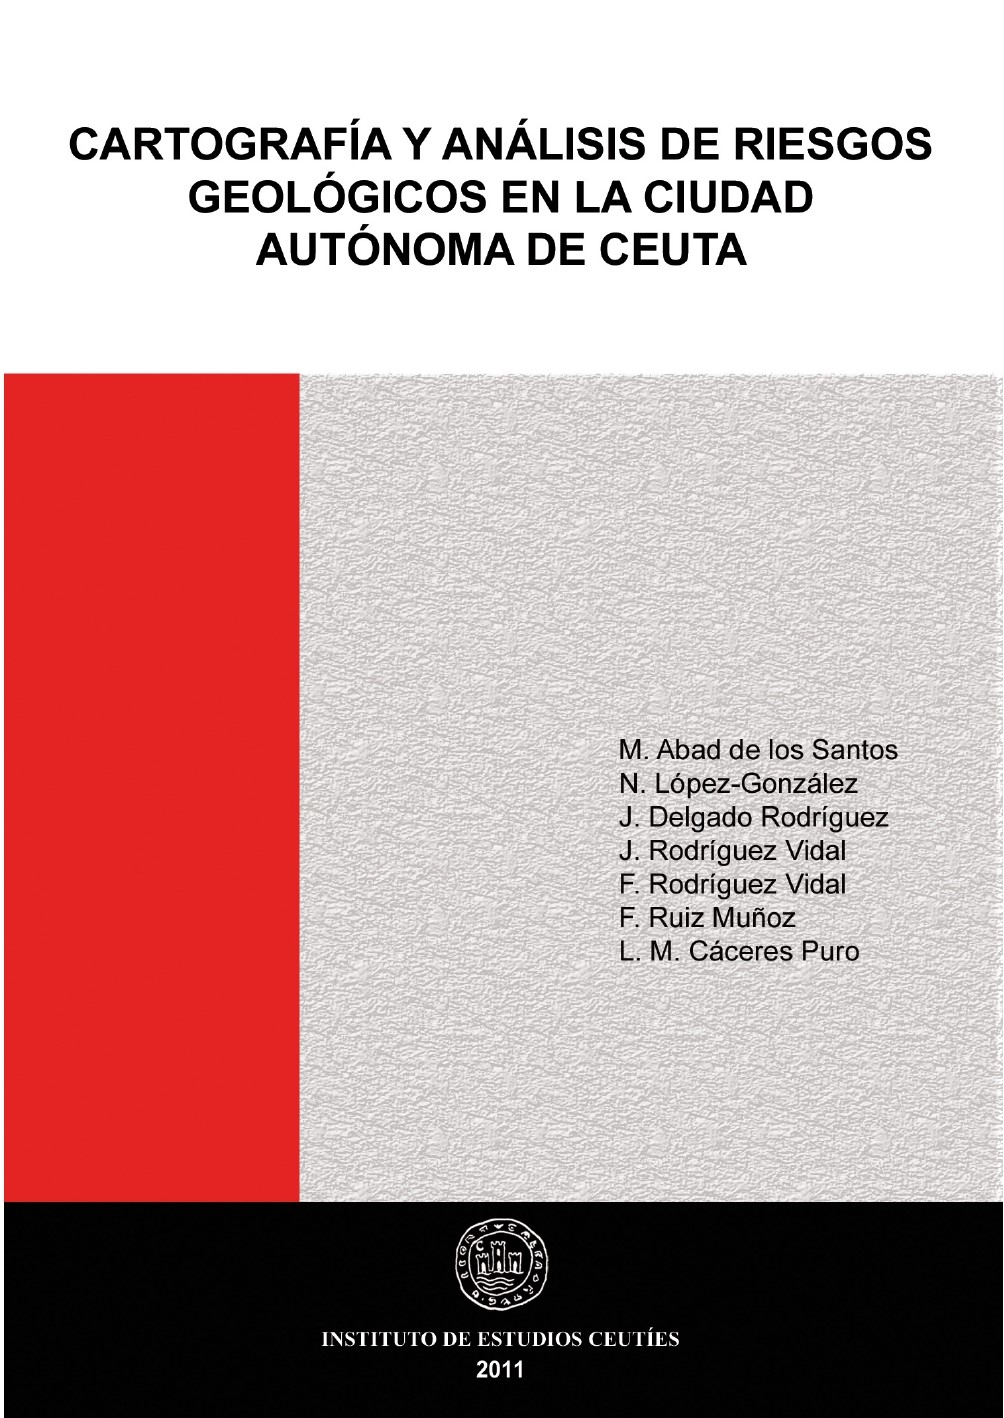 Imagen de portada del libro Cartografía y análisis de riesgos geológicos en la Ciudad Autónoma de Ceuta